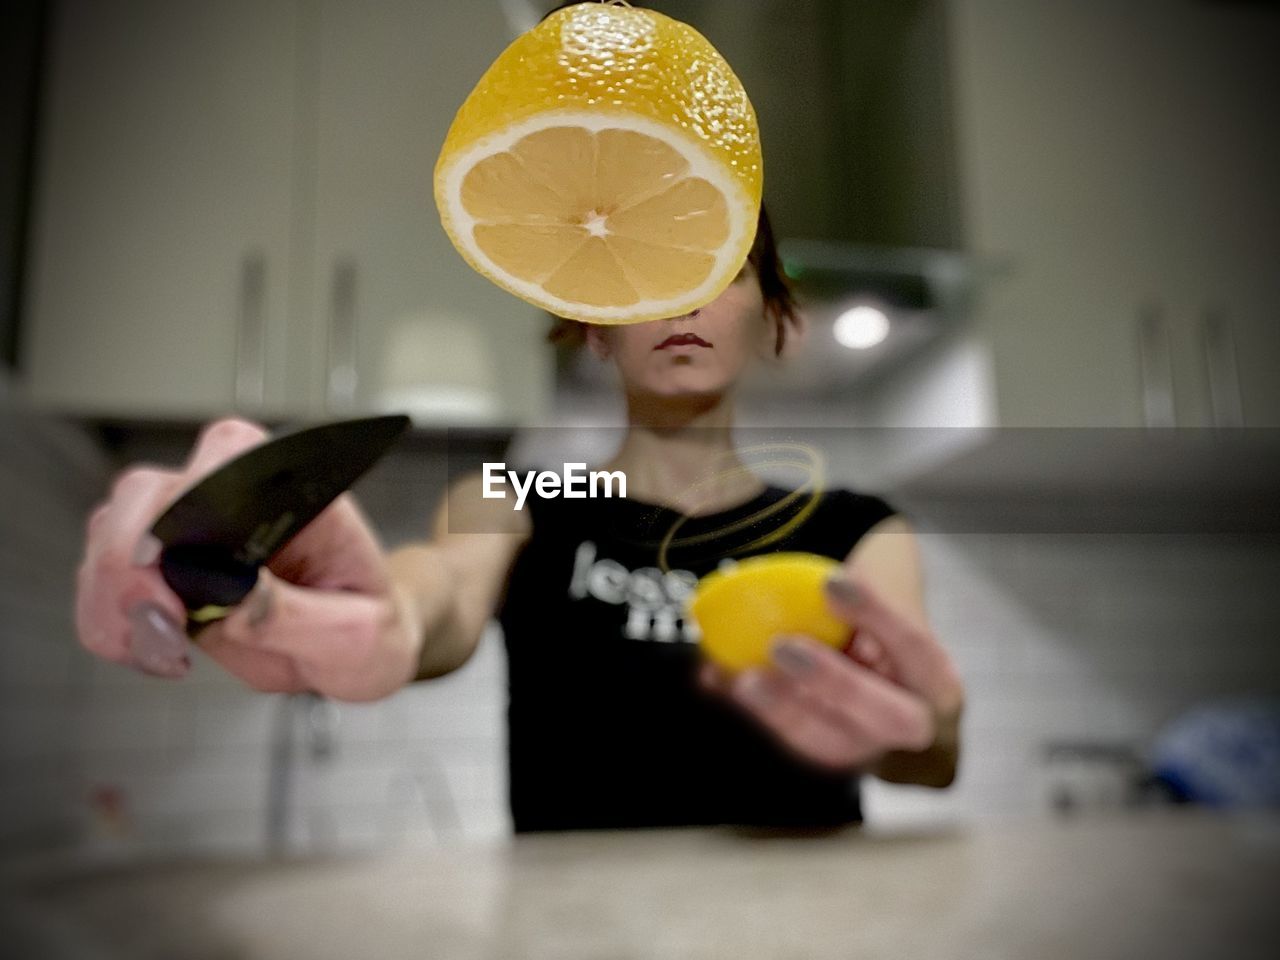 Lemon cut in half by a woman